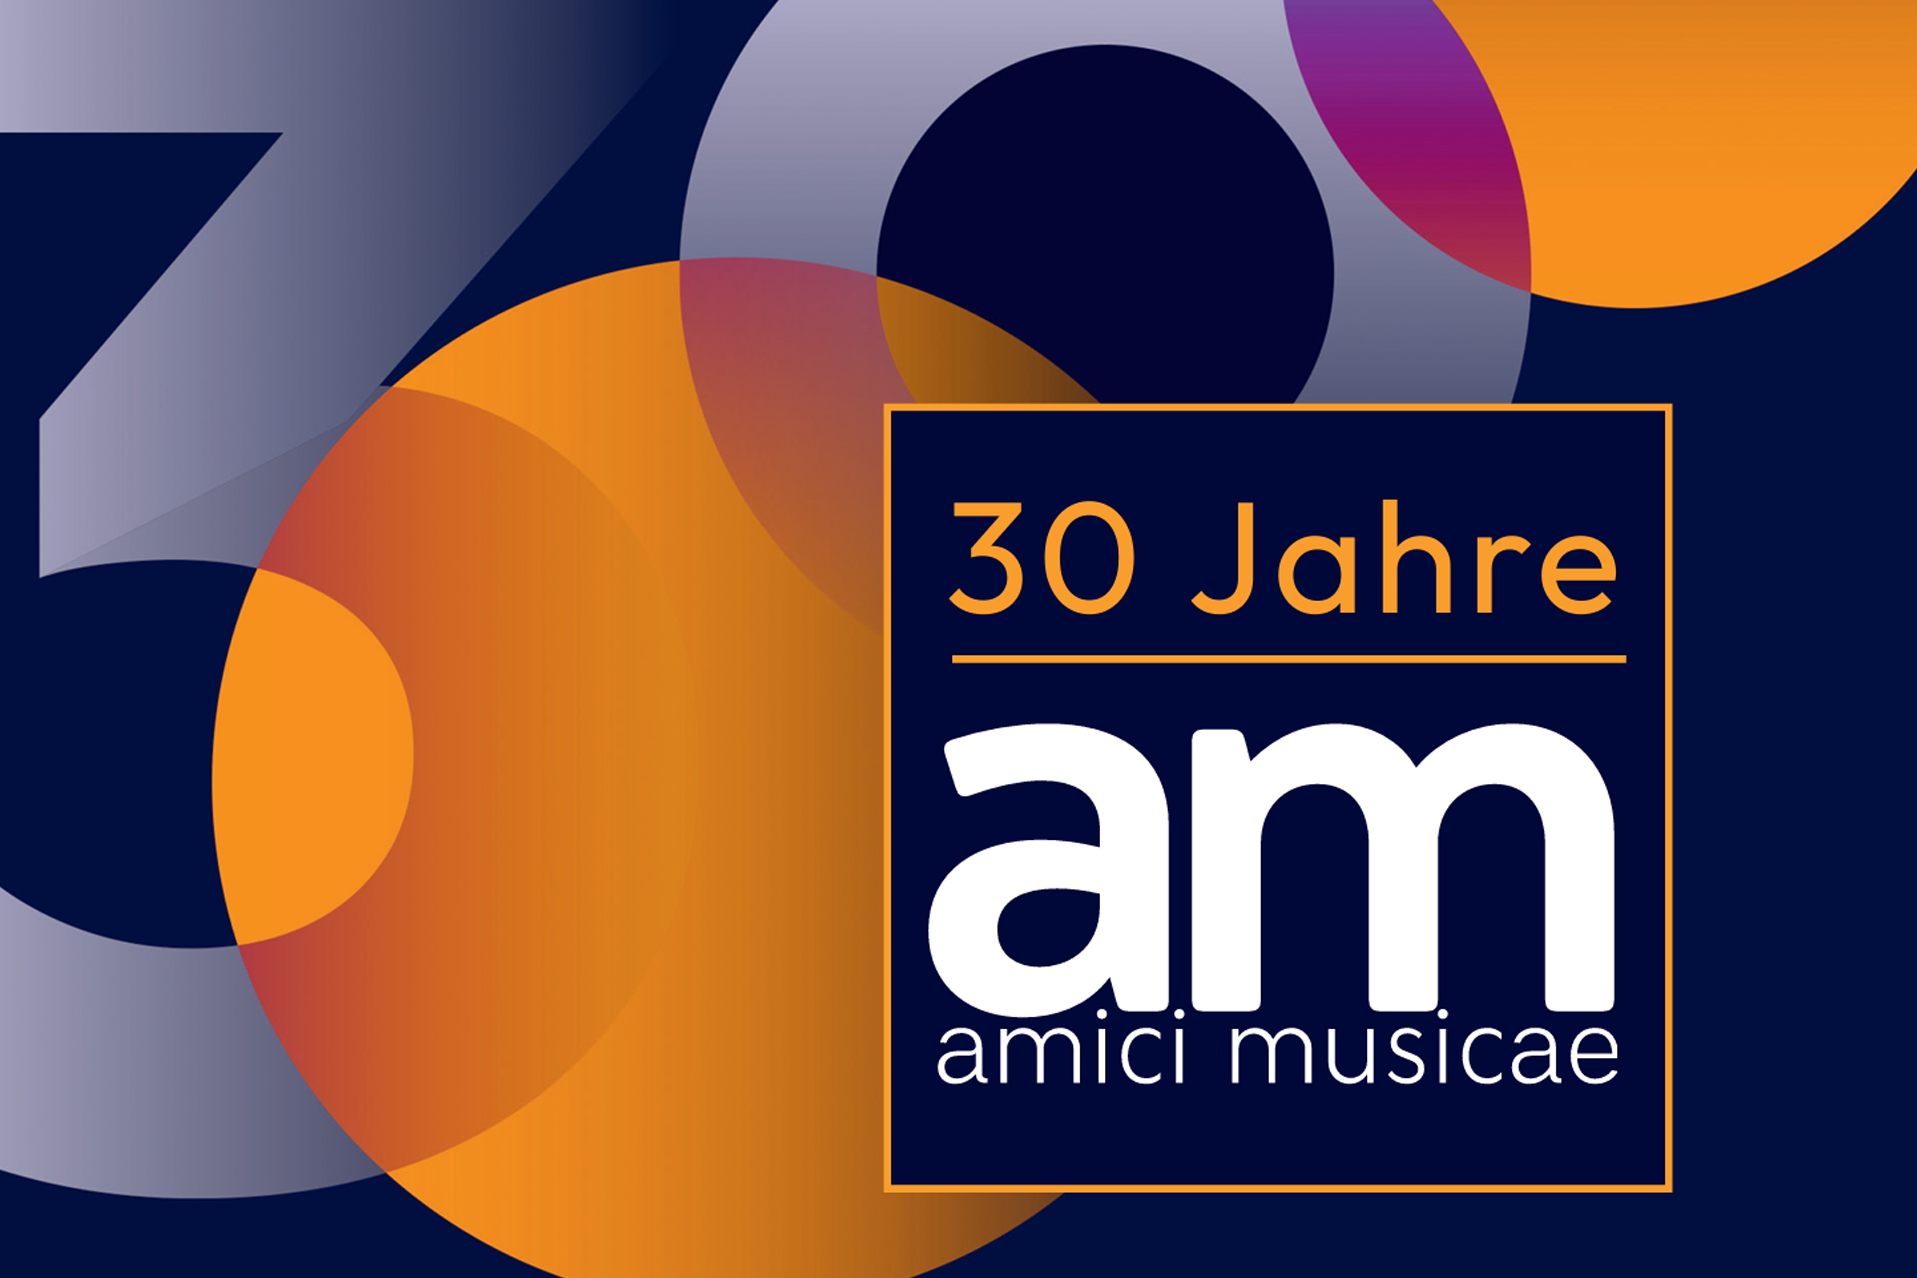 Jubiläum: 30 Jahre amici musicae